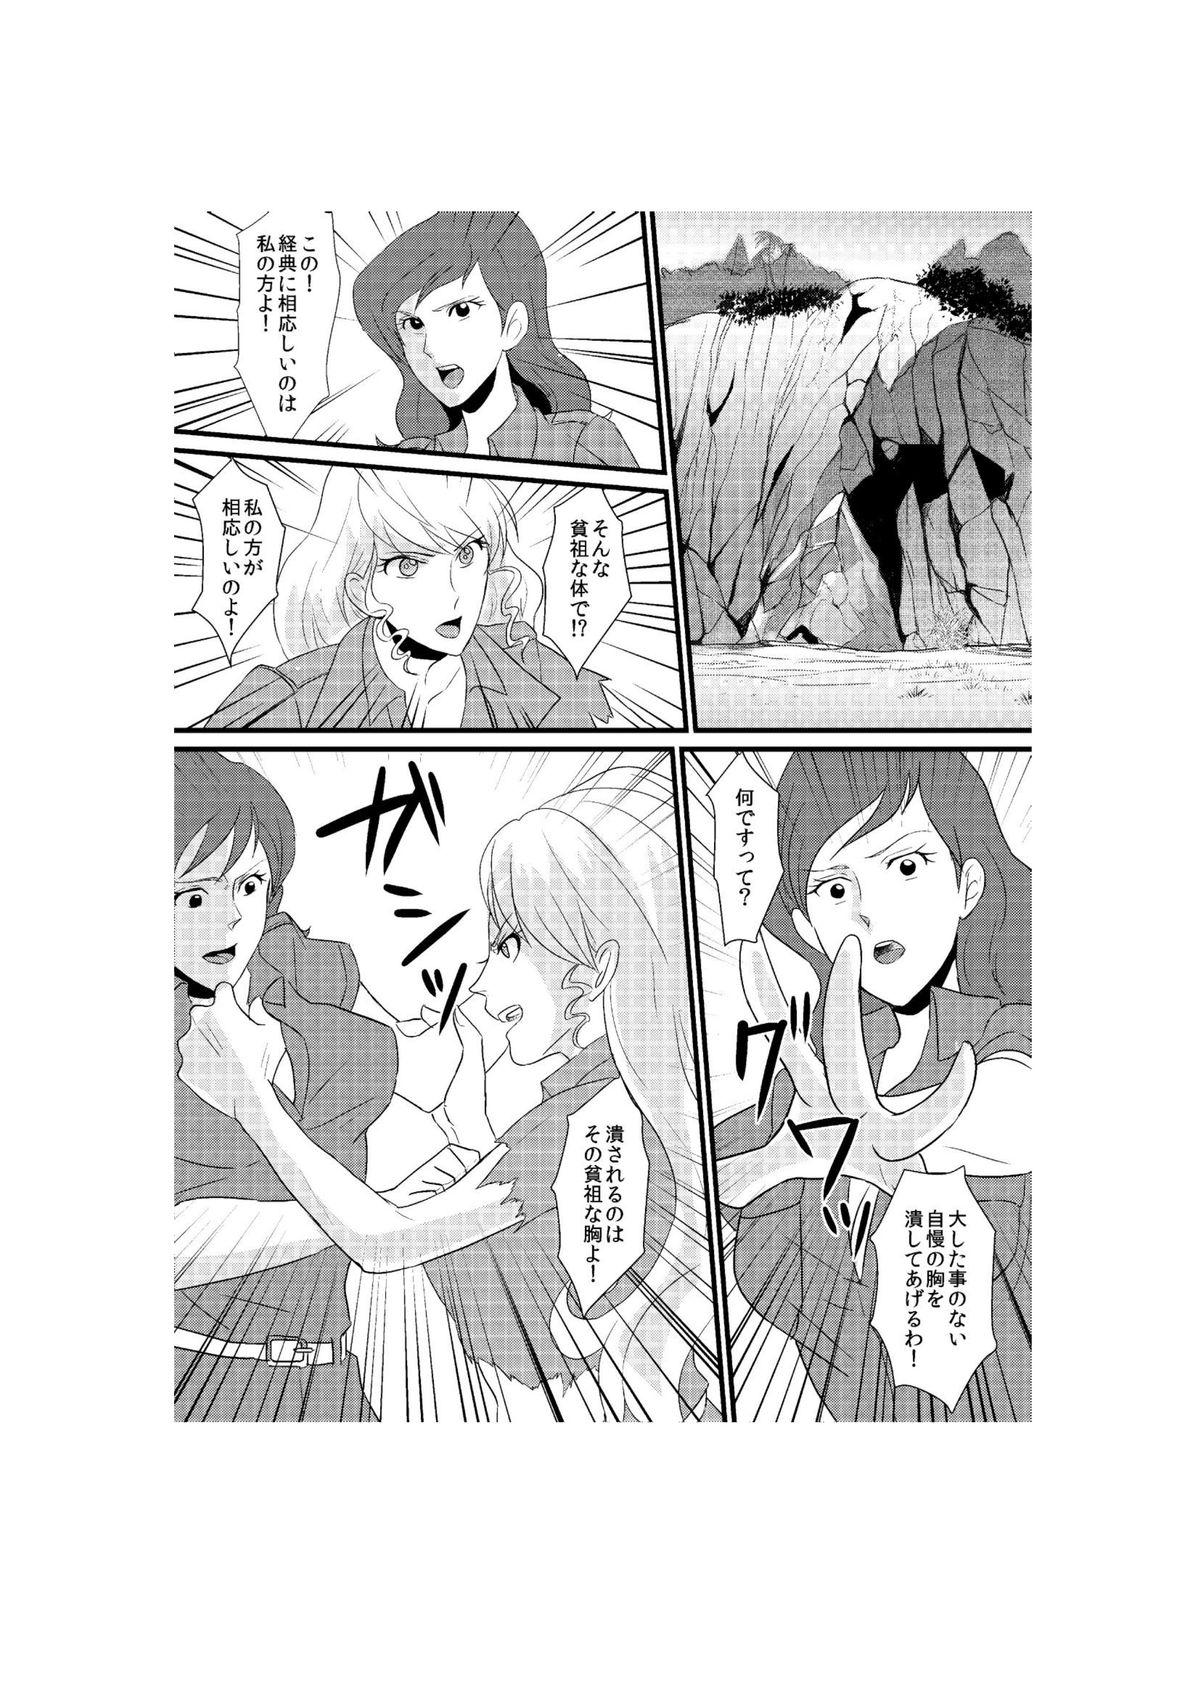 Master Fushi no Kyouten Ureta Onna no Tatakai - Fujiko VS Emmanuelle - Lupin iii Amateur - Page 1